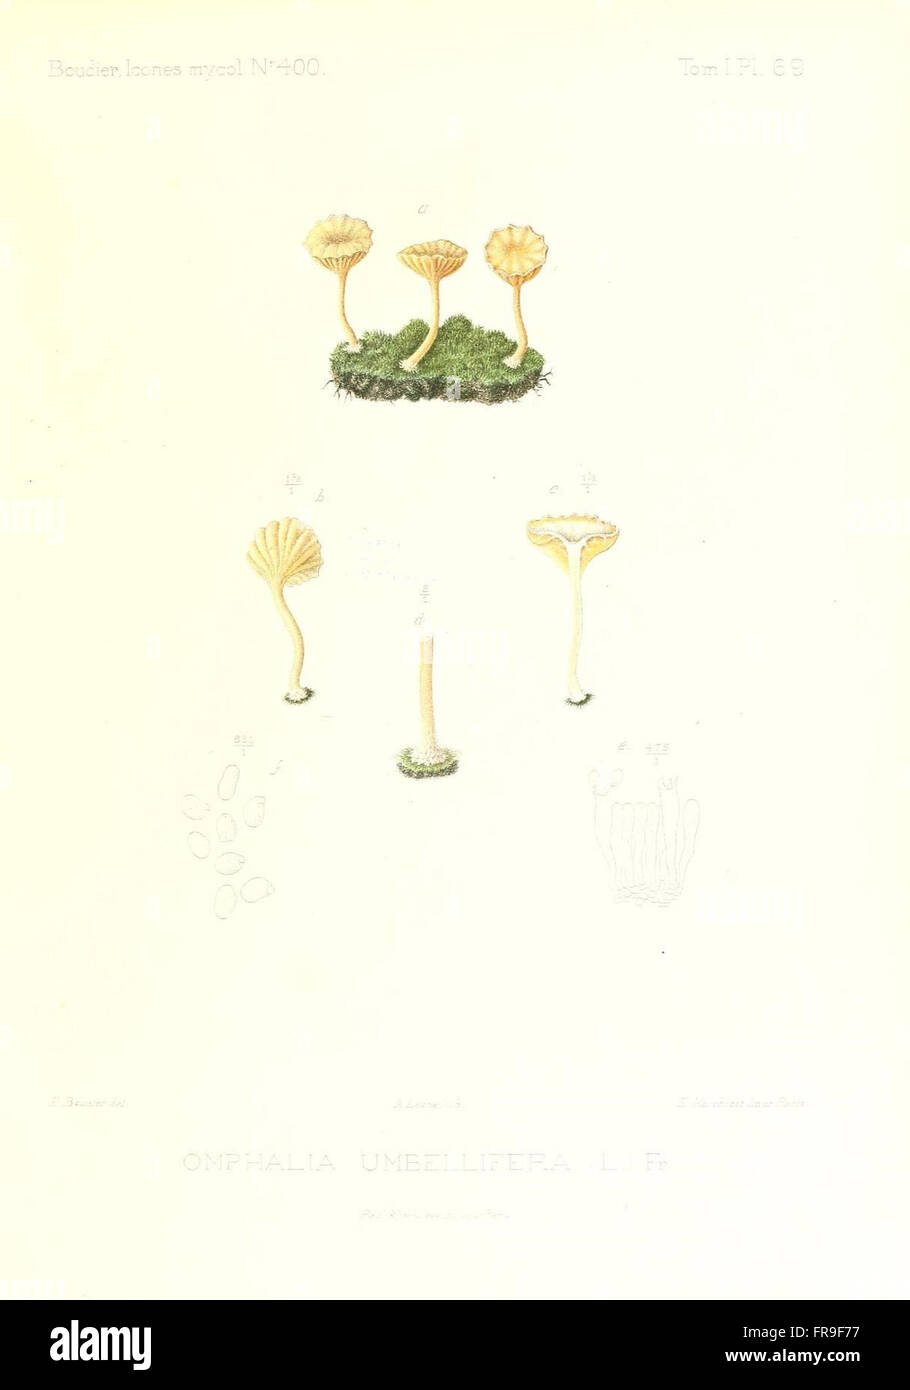 Icones mycologicC3A6, ou Iconographie des champignons de France principalement Discomycetes (Pl. 69) Stock Photo